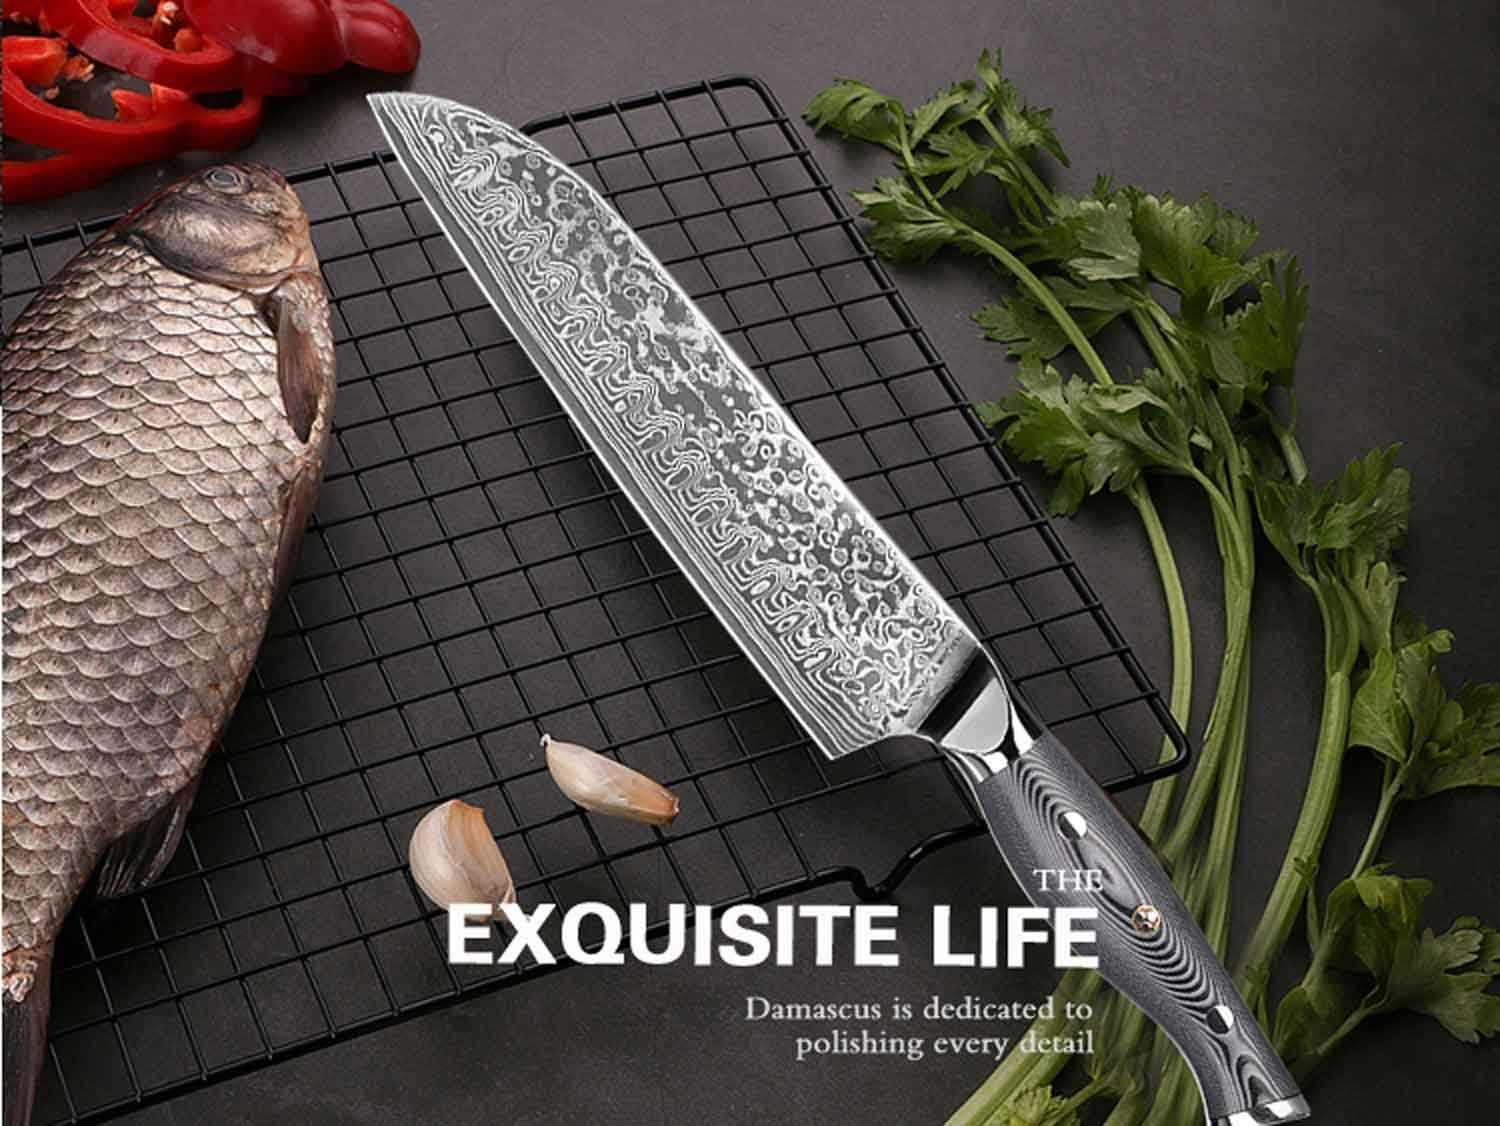 Damastmesser Santokumesser Muxel Carbon Kochmesser Damast-Klinge Küchenmesser Messer